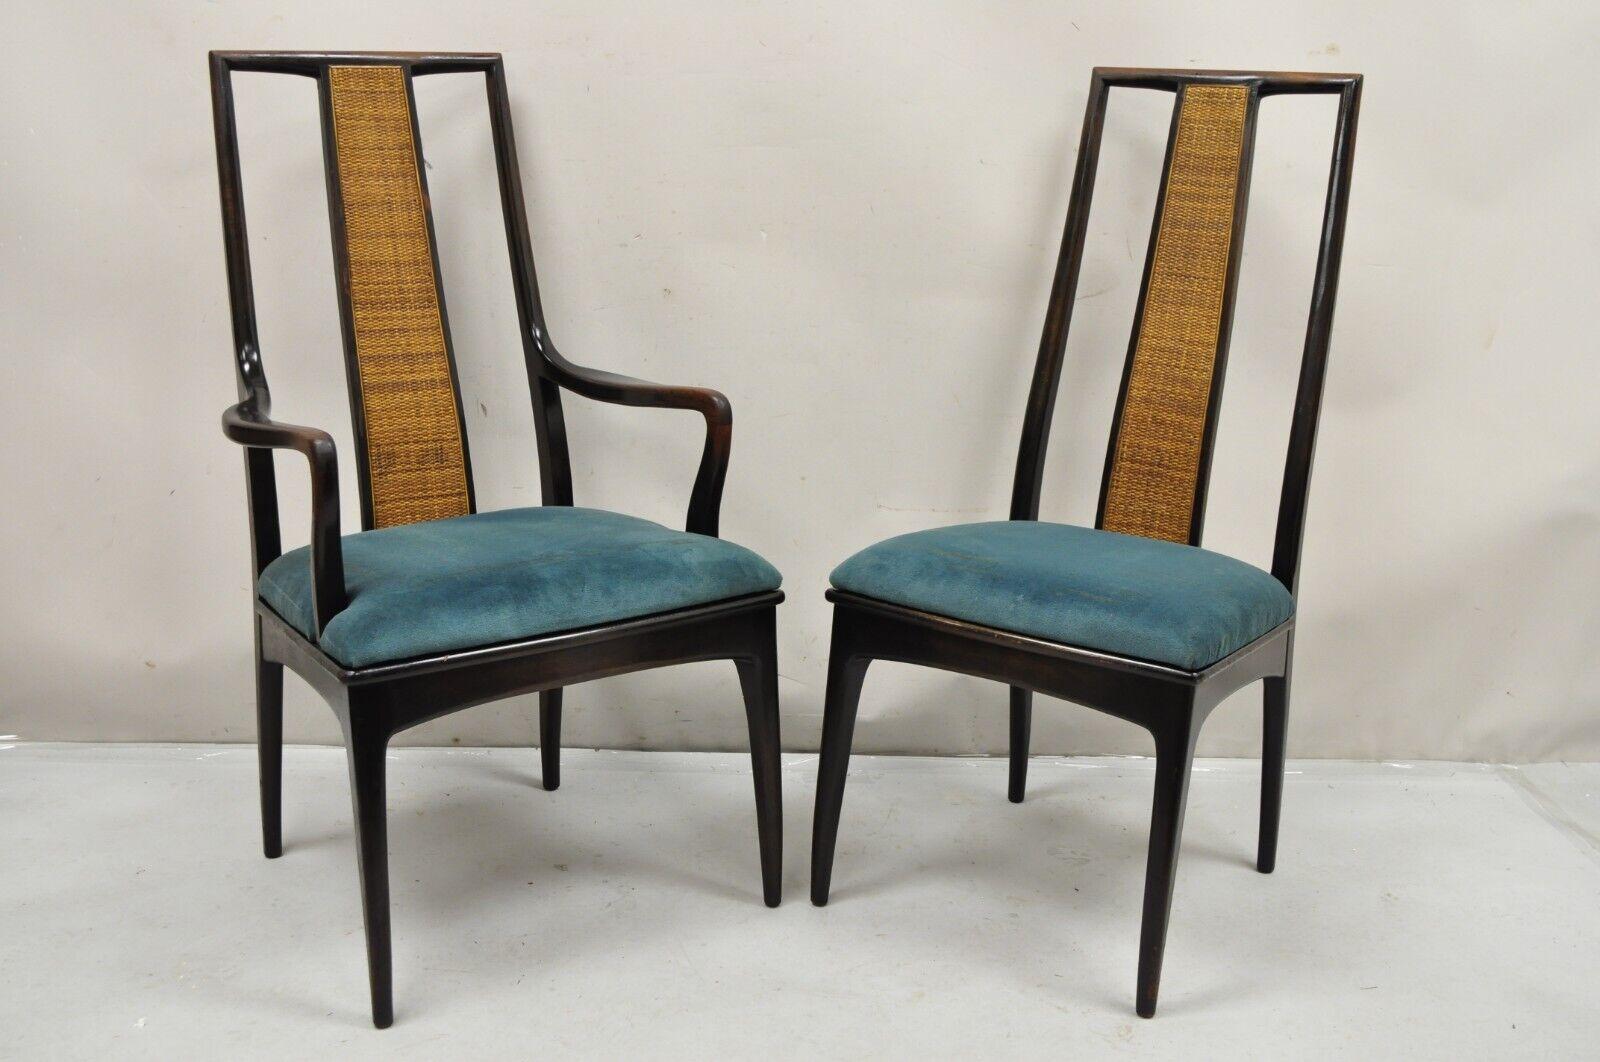 Vintage John Stuart Cane Back Mid Century Modern Asian Inspired Dining Chairs - Set of 10. L'article comprend 2 fauteuils, 8 chaises d'appoint, dossiers en panneaux de canne, cadre en bois massif sculpté, étiquette d'origine, ensemble très rare de